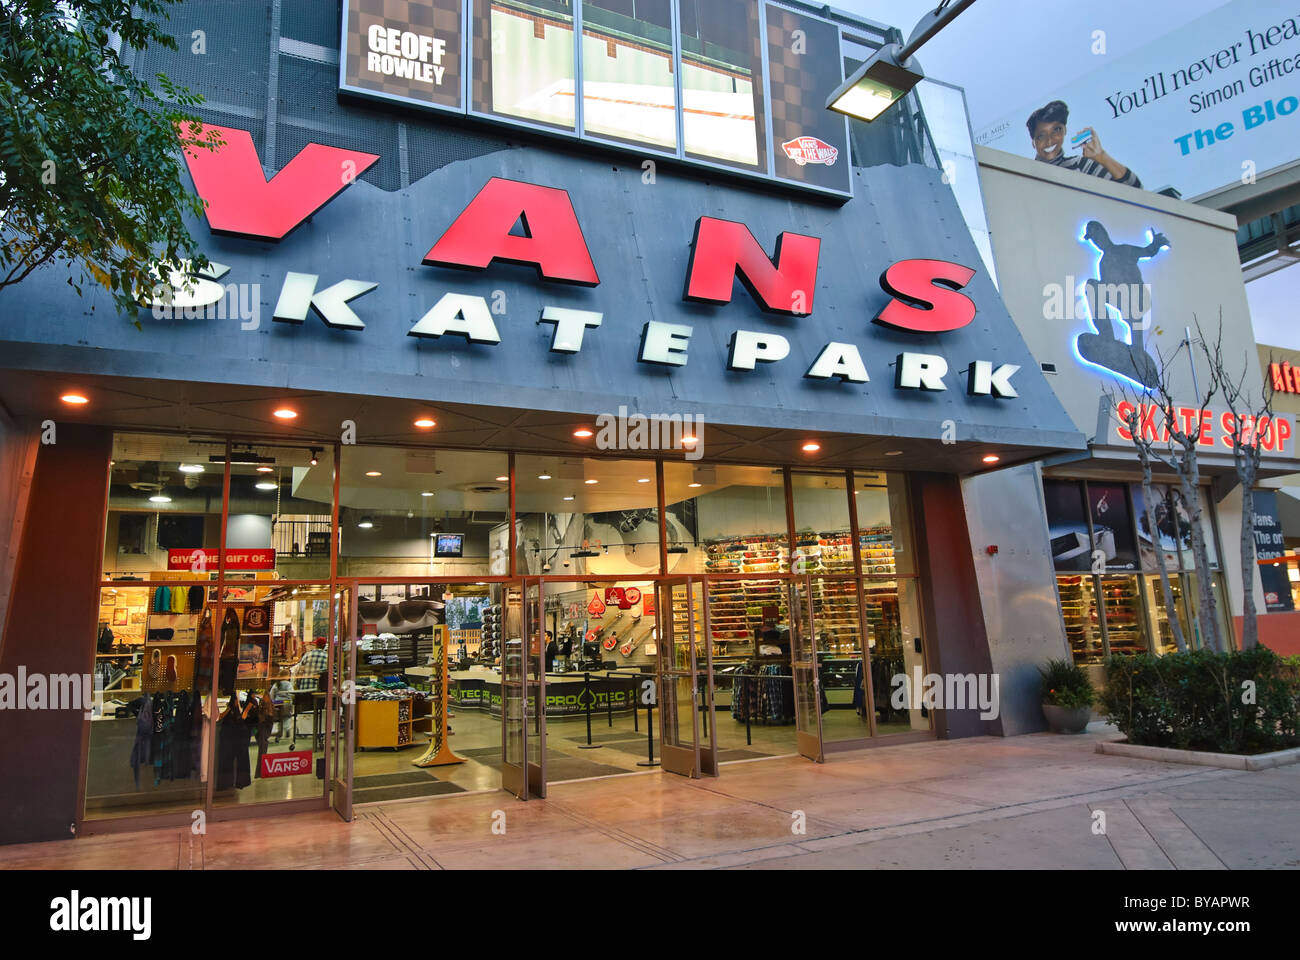 Vans skatepark and adjacent skate themed retail stores. Stock Photo